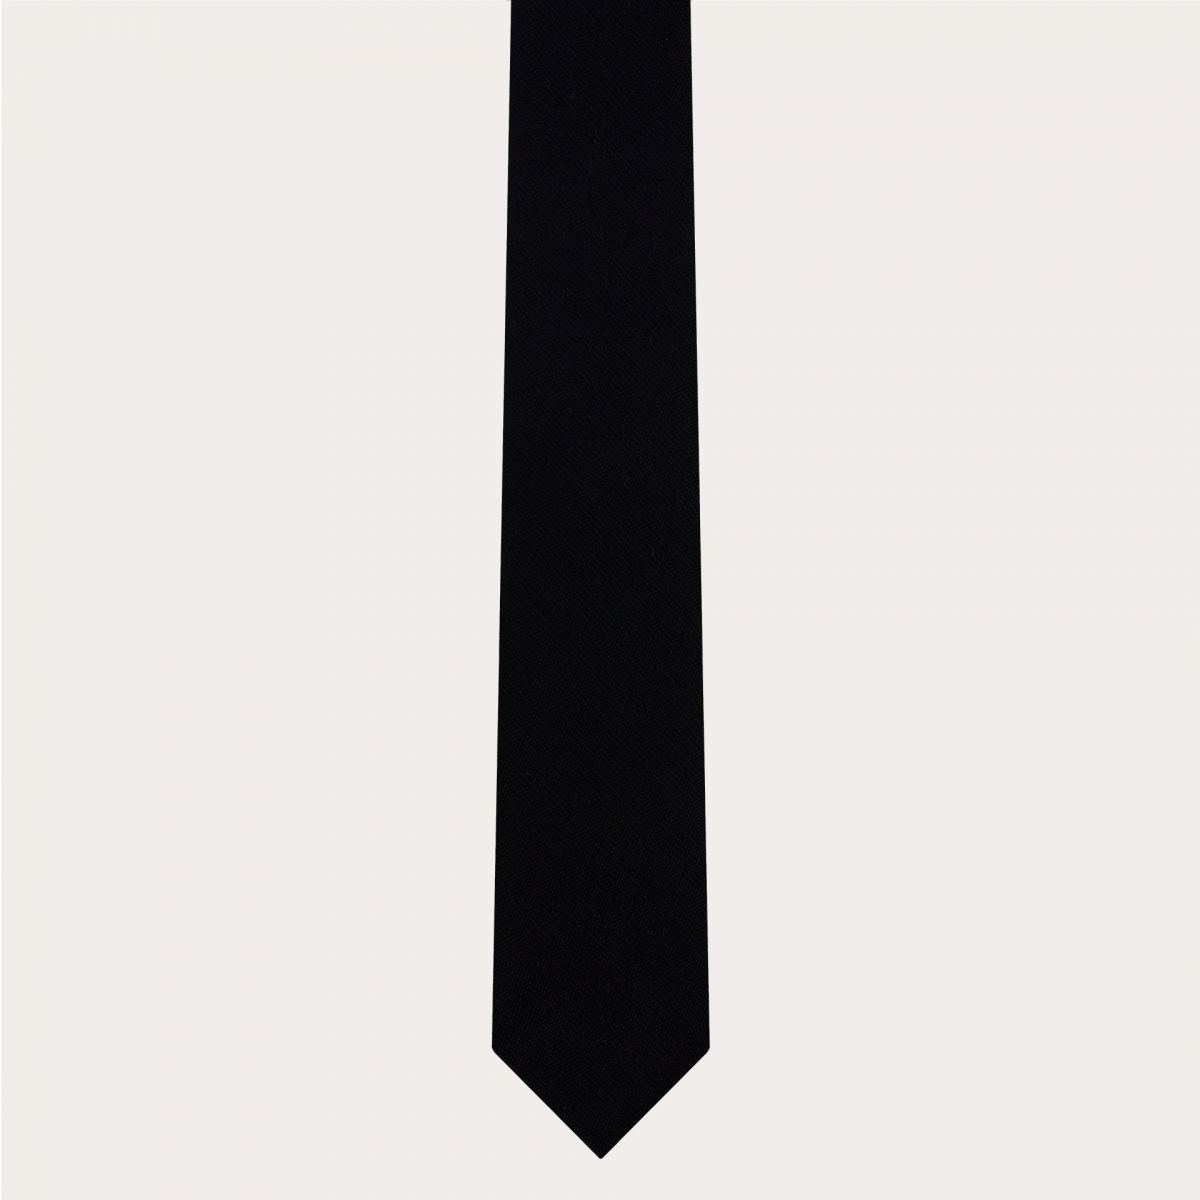 Cravate fine classique en pure soie, noir